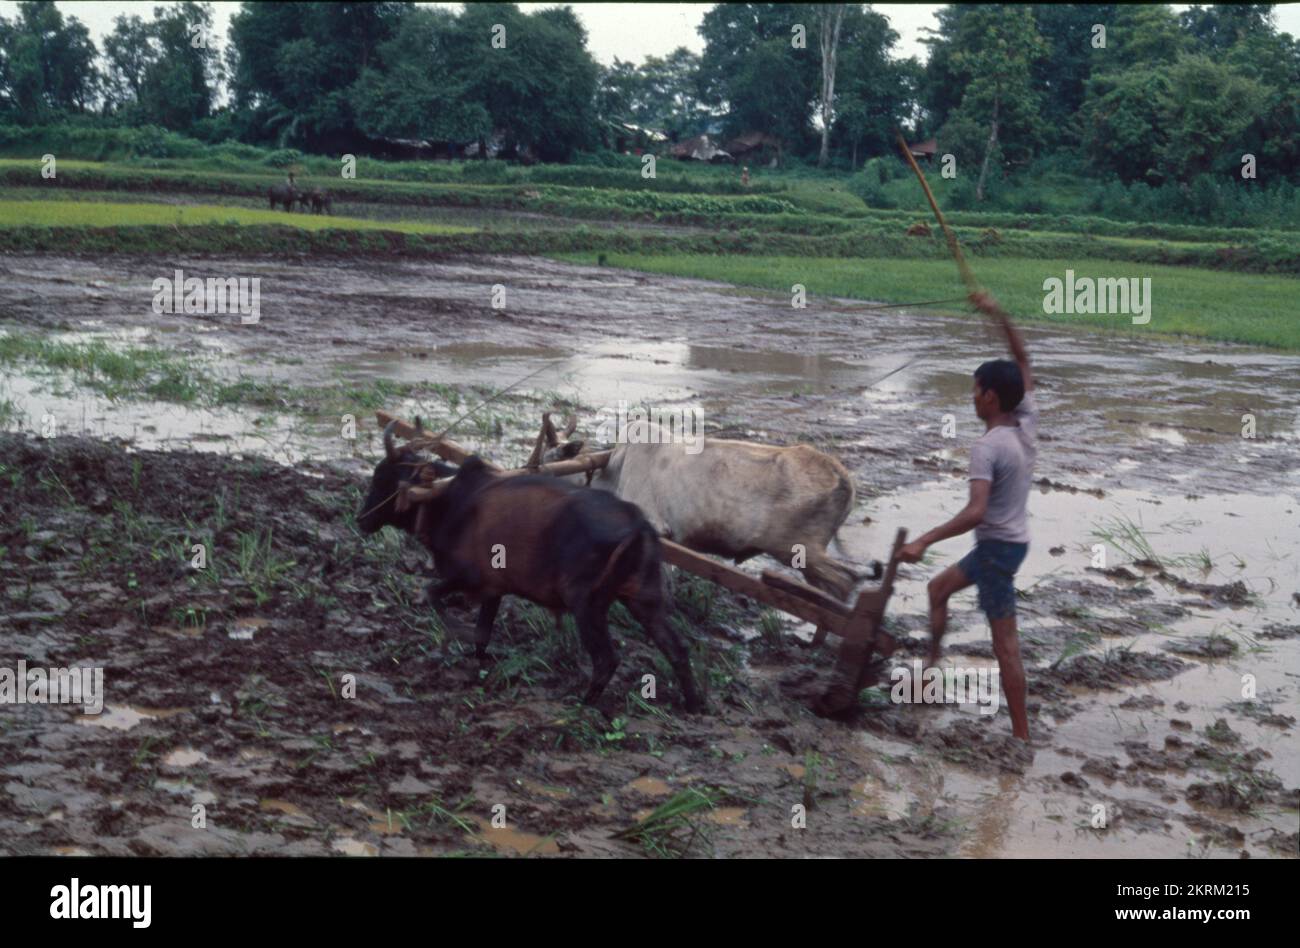 Traditionnellement, les agriculteurs utilisent le taureau pour labourer le champ à l'aide d'animaux tels que les taureaux. C'est le style indien traditionnel, la traction du sillon se fait en utilisant des taureaux. Le labourage et le labourage sont les mêmes. Banque D'Images